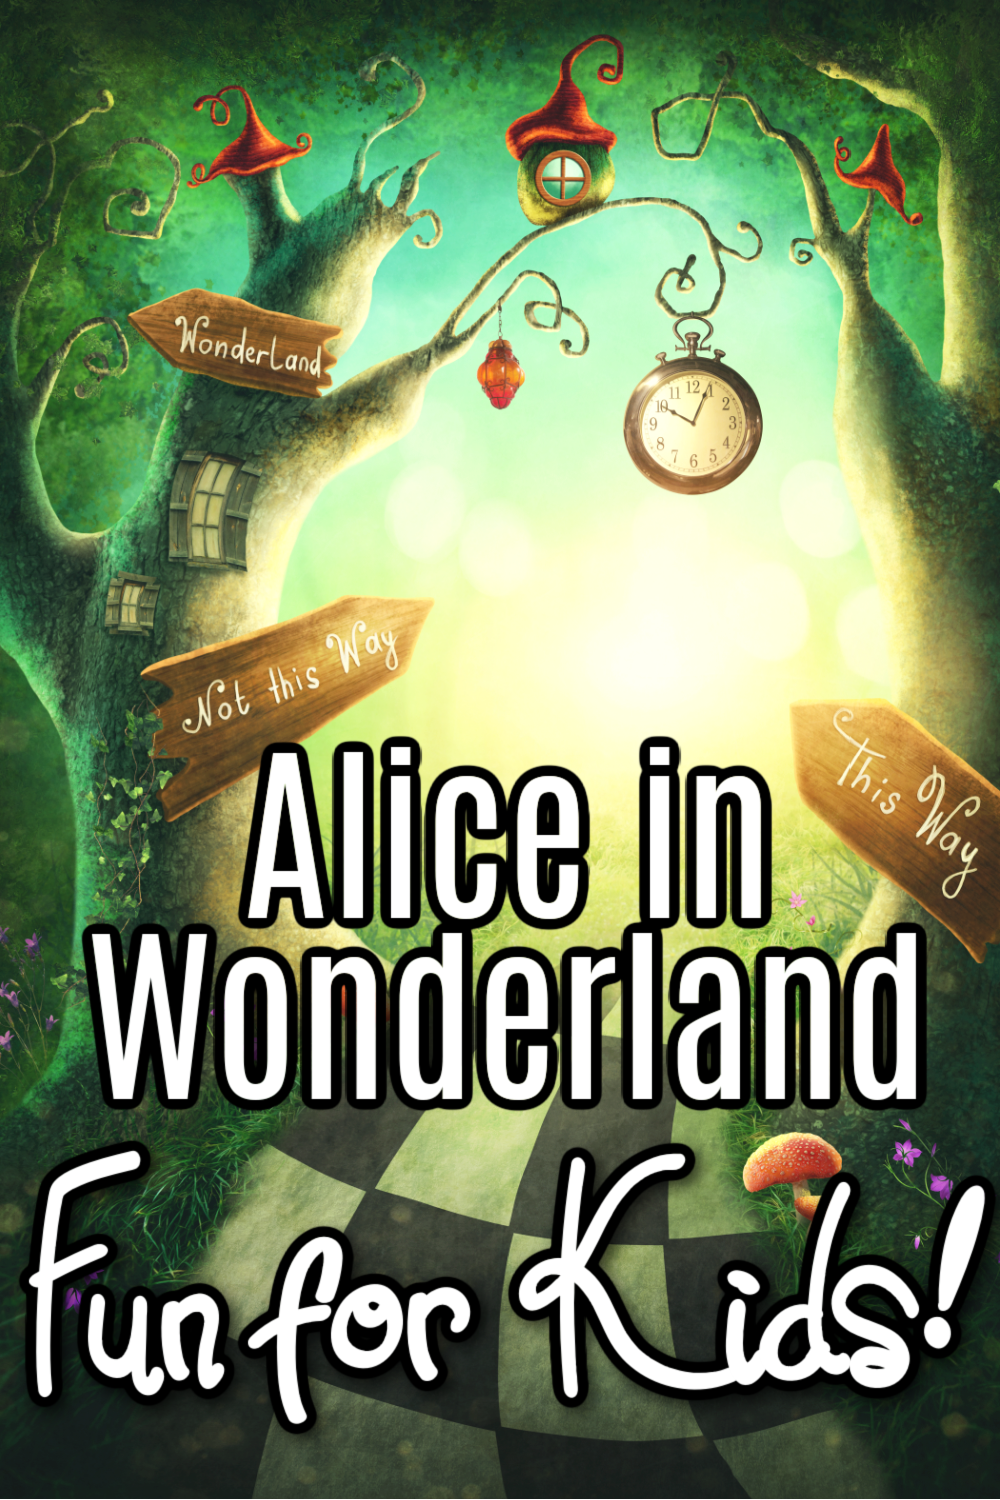 alice-in-wonderland-activities Alice in Wonderland Printables and Preschool Activities